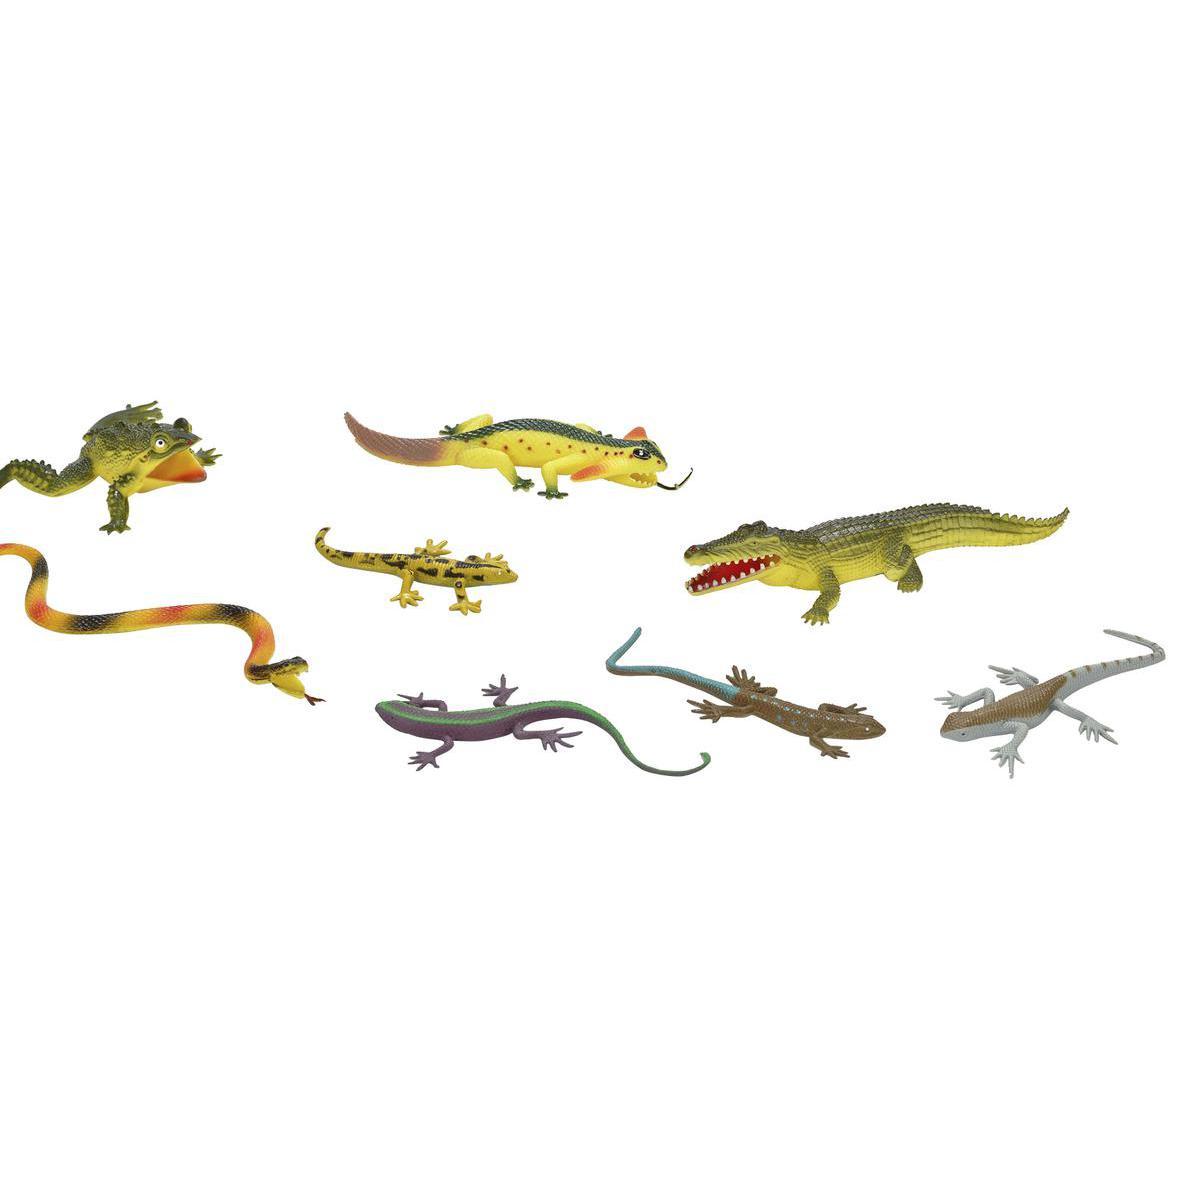 Lot de 8 reptiles en PVC - 30 x 17,5 x 3 cm - Vert, Jaune, Marron